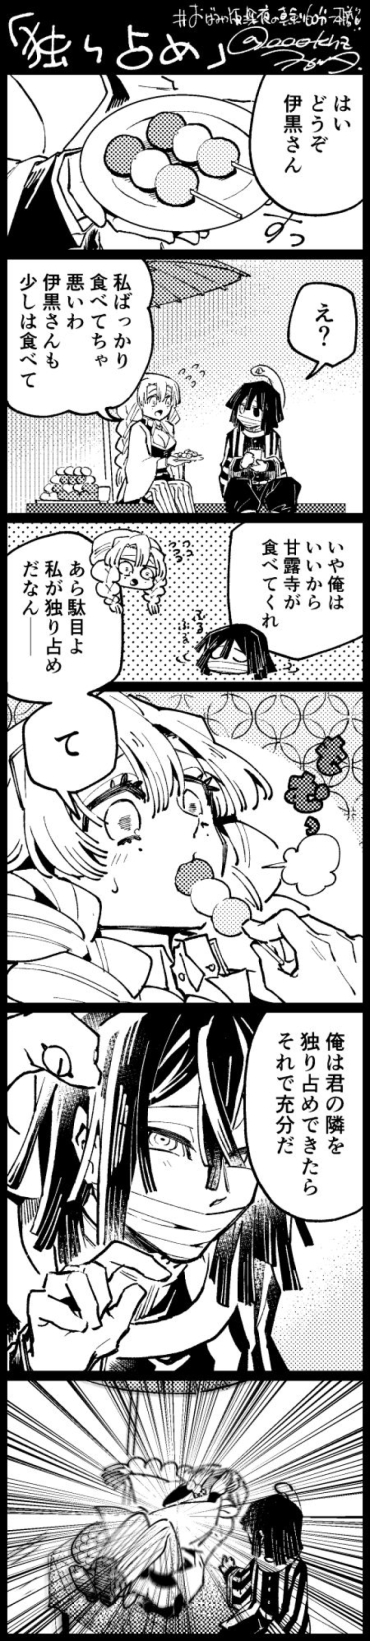 [Wogata] ObaMitsu Manga + E Rogu Sono 2